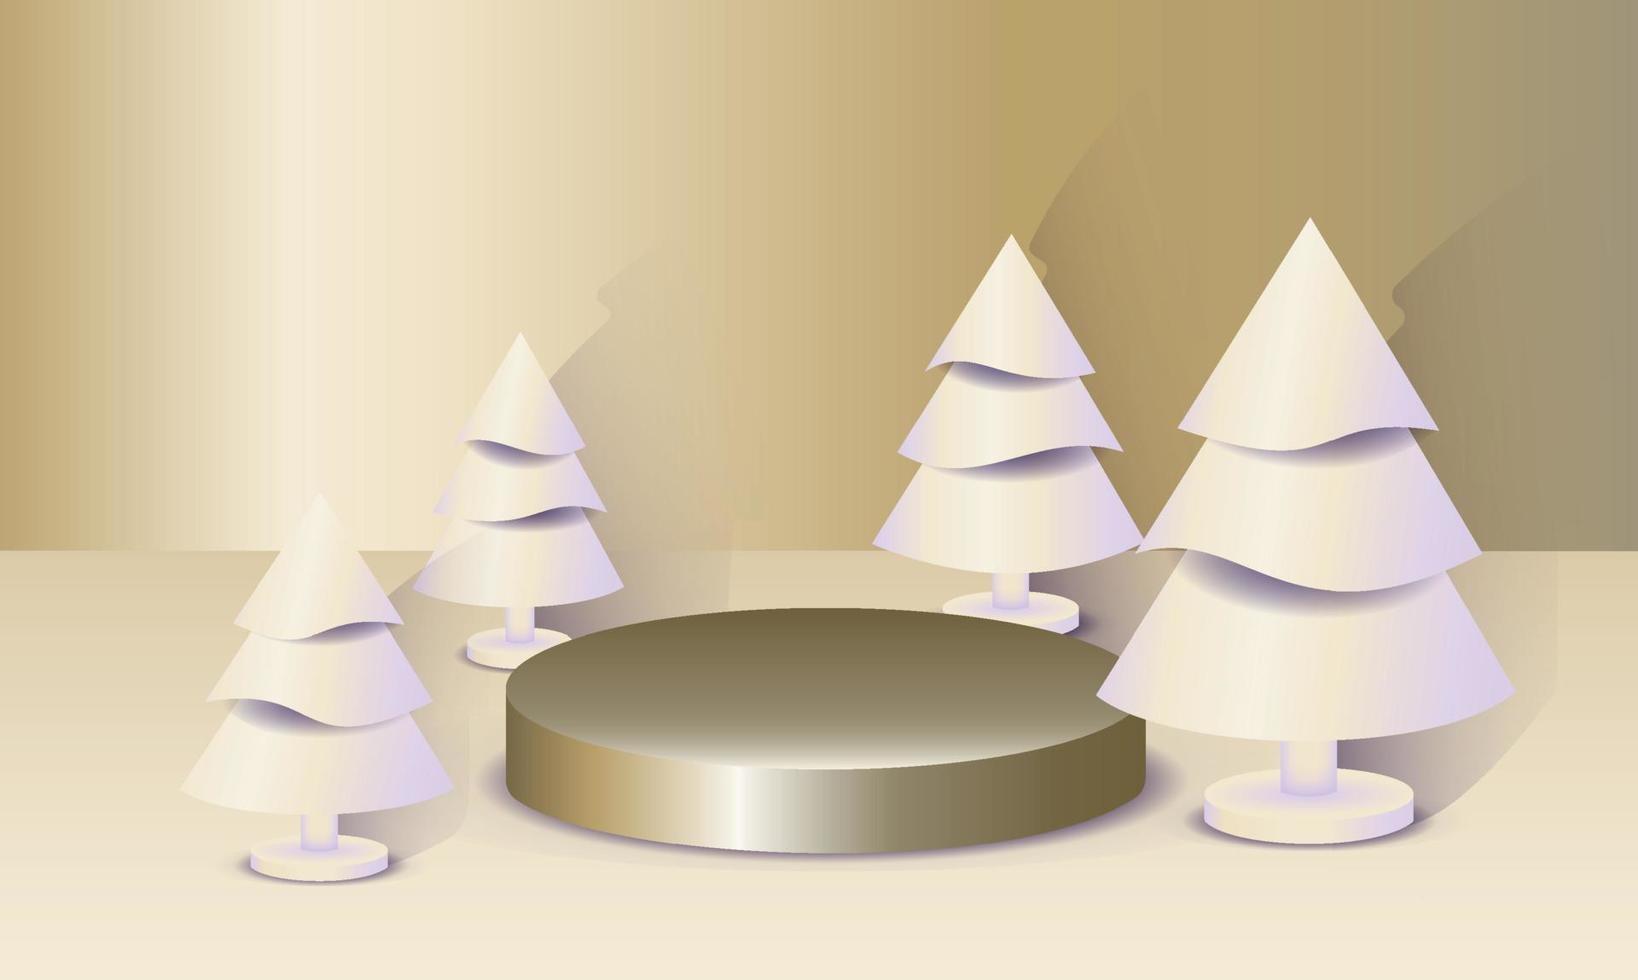 abstrakt minimal falsk upp scen. geometri podium form för visa kosmetisk produkt visa och varor. skede piedestal, plattform. vinter- jul guld bakgrund med vit jul träd. 3d vektor